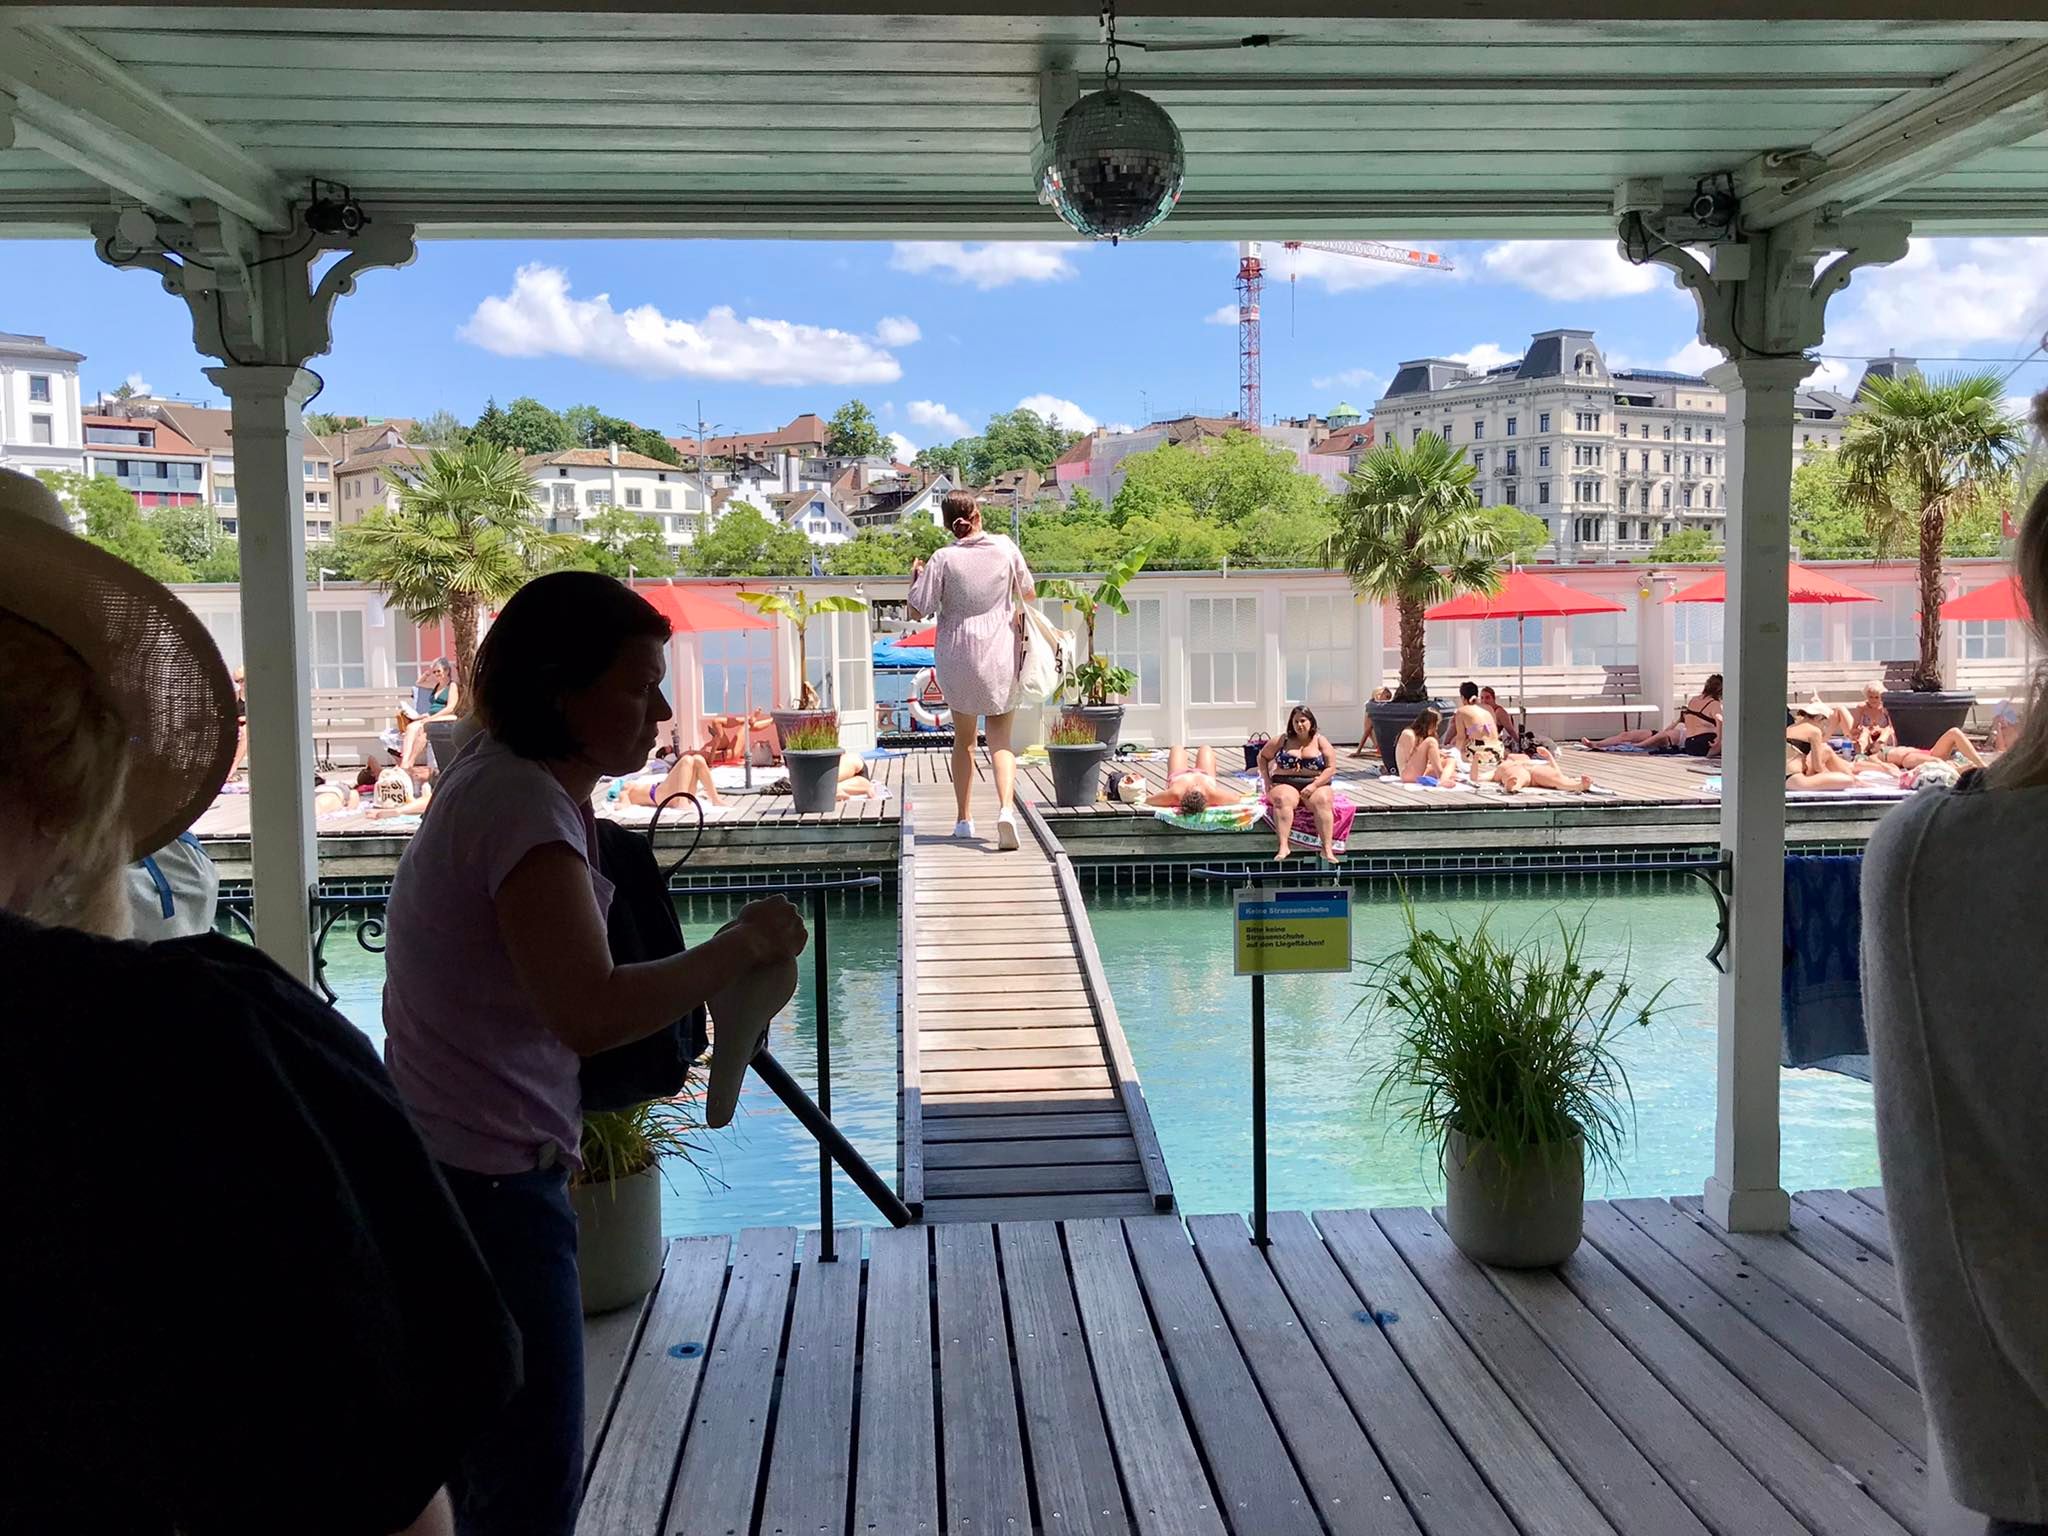 Zurich bains pour femmes - Discovery Trains